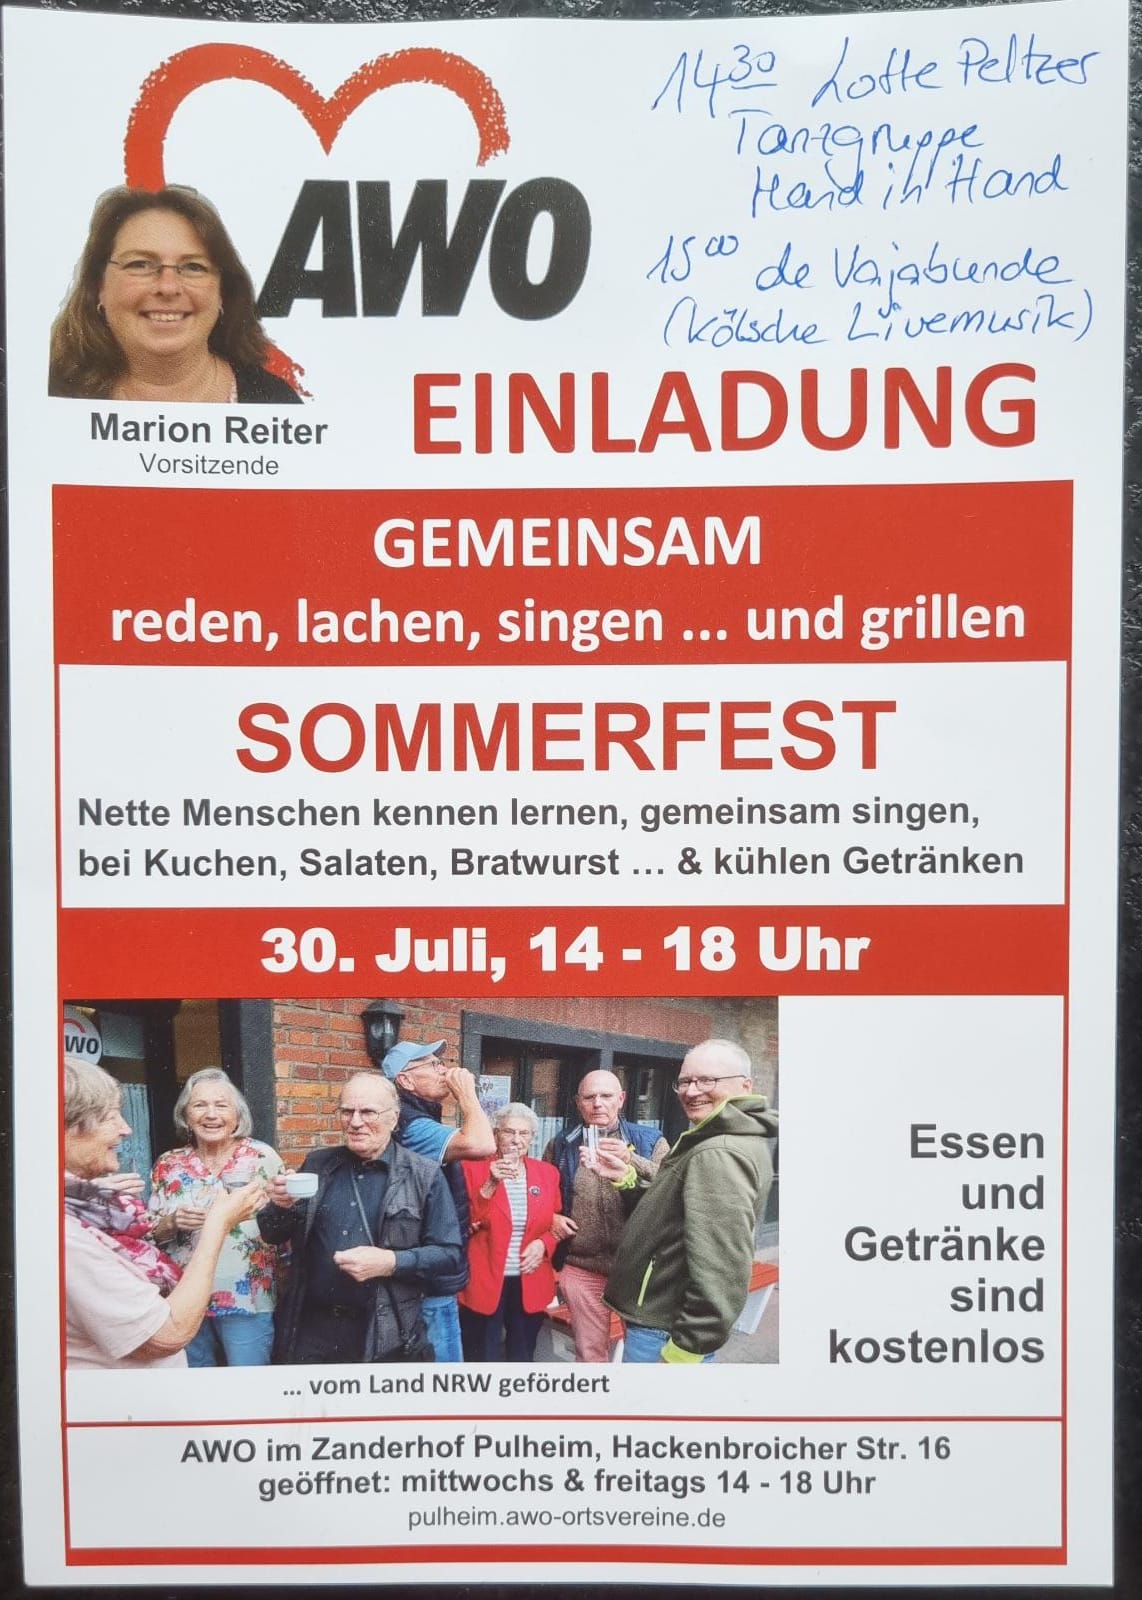 Sommerfest bei der in Pulheim